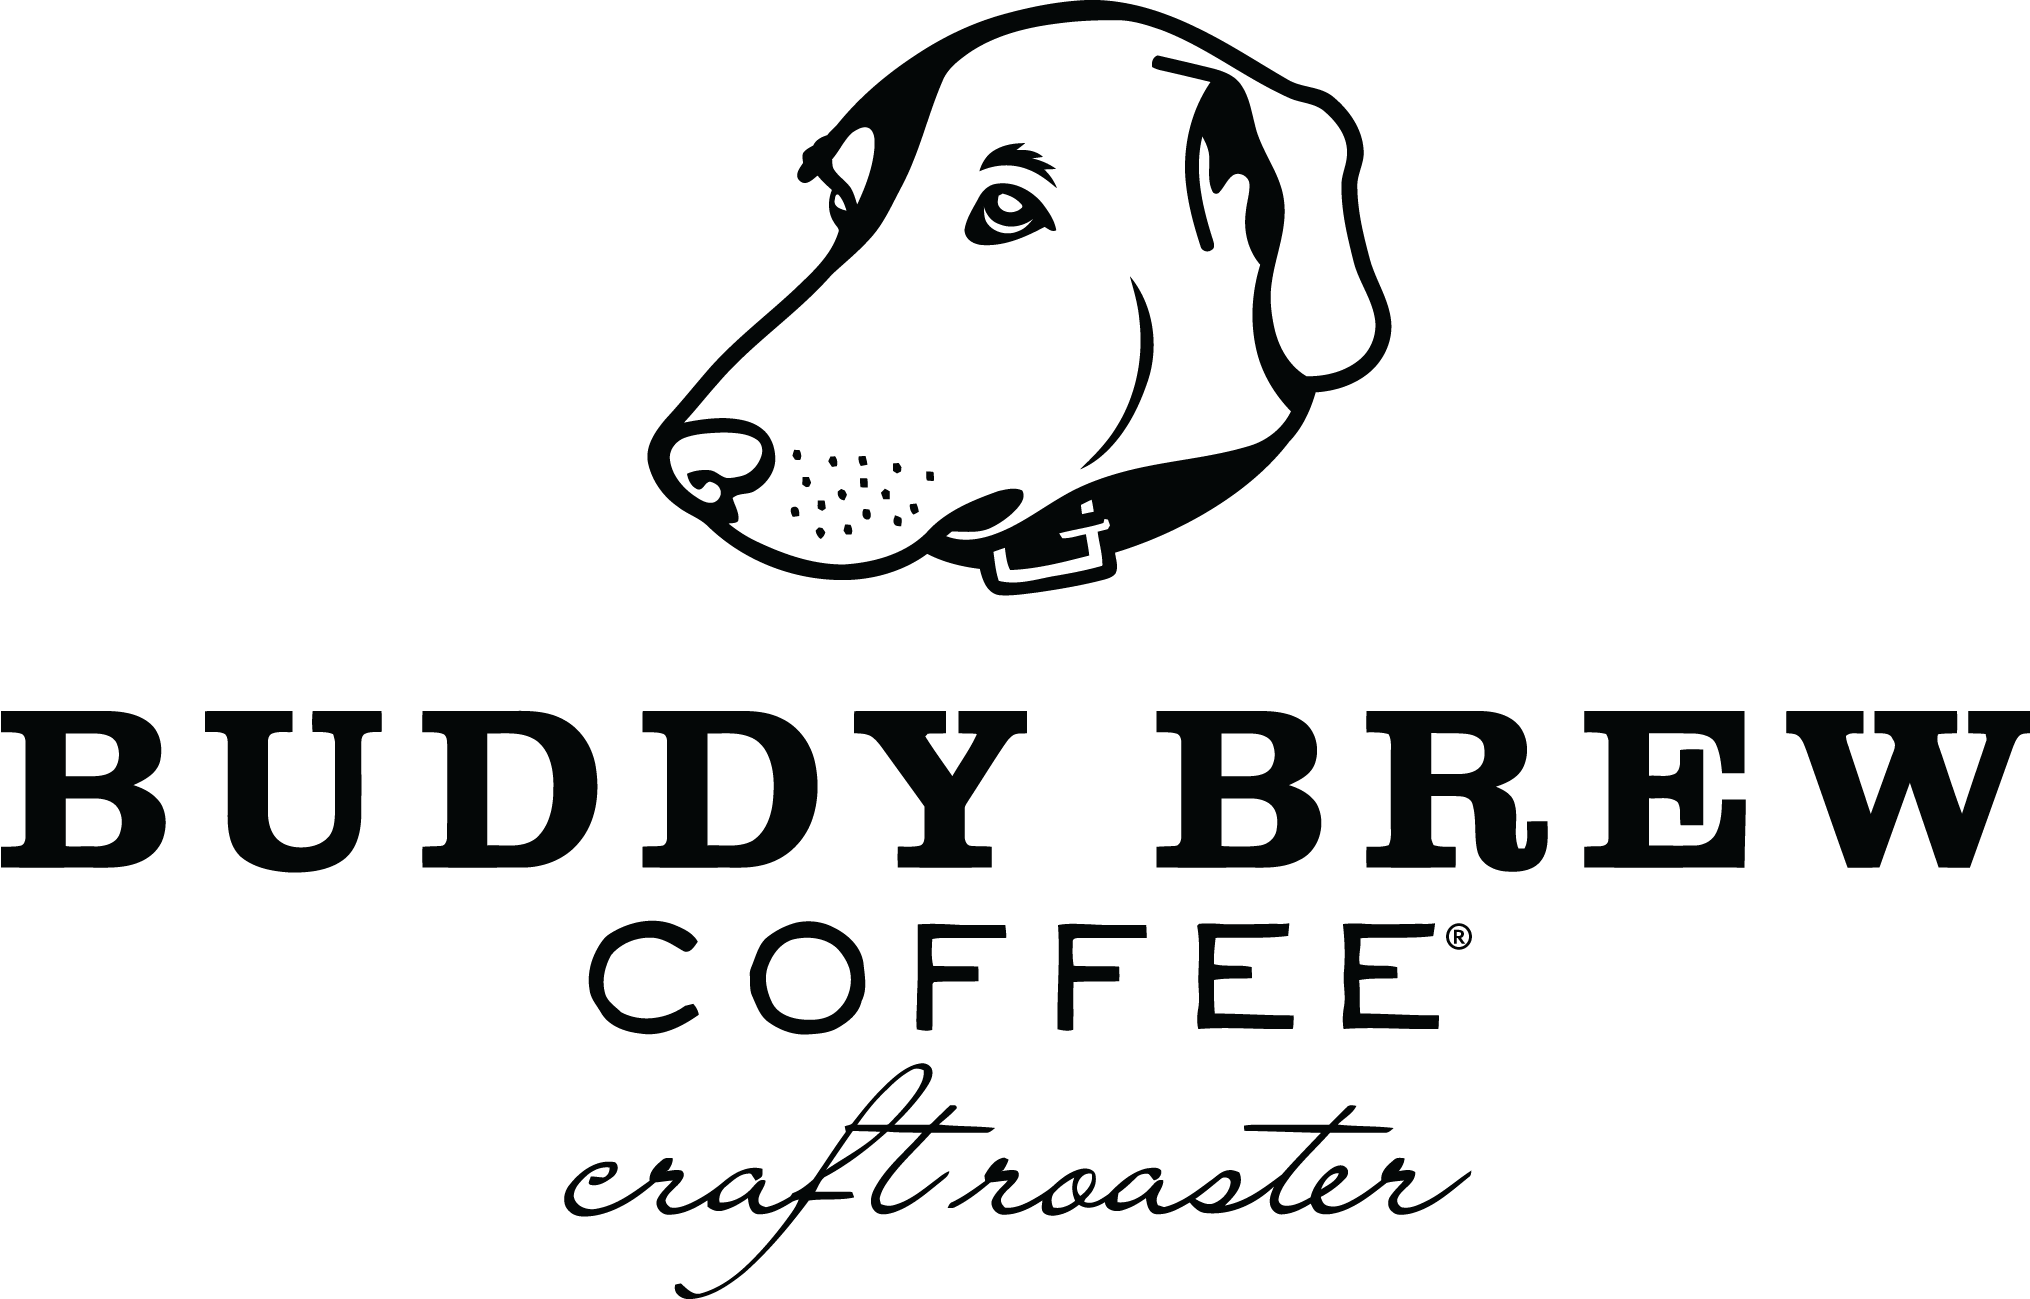 Buddy Brew Coffee Bay to Bay